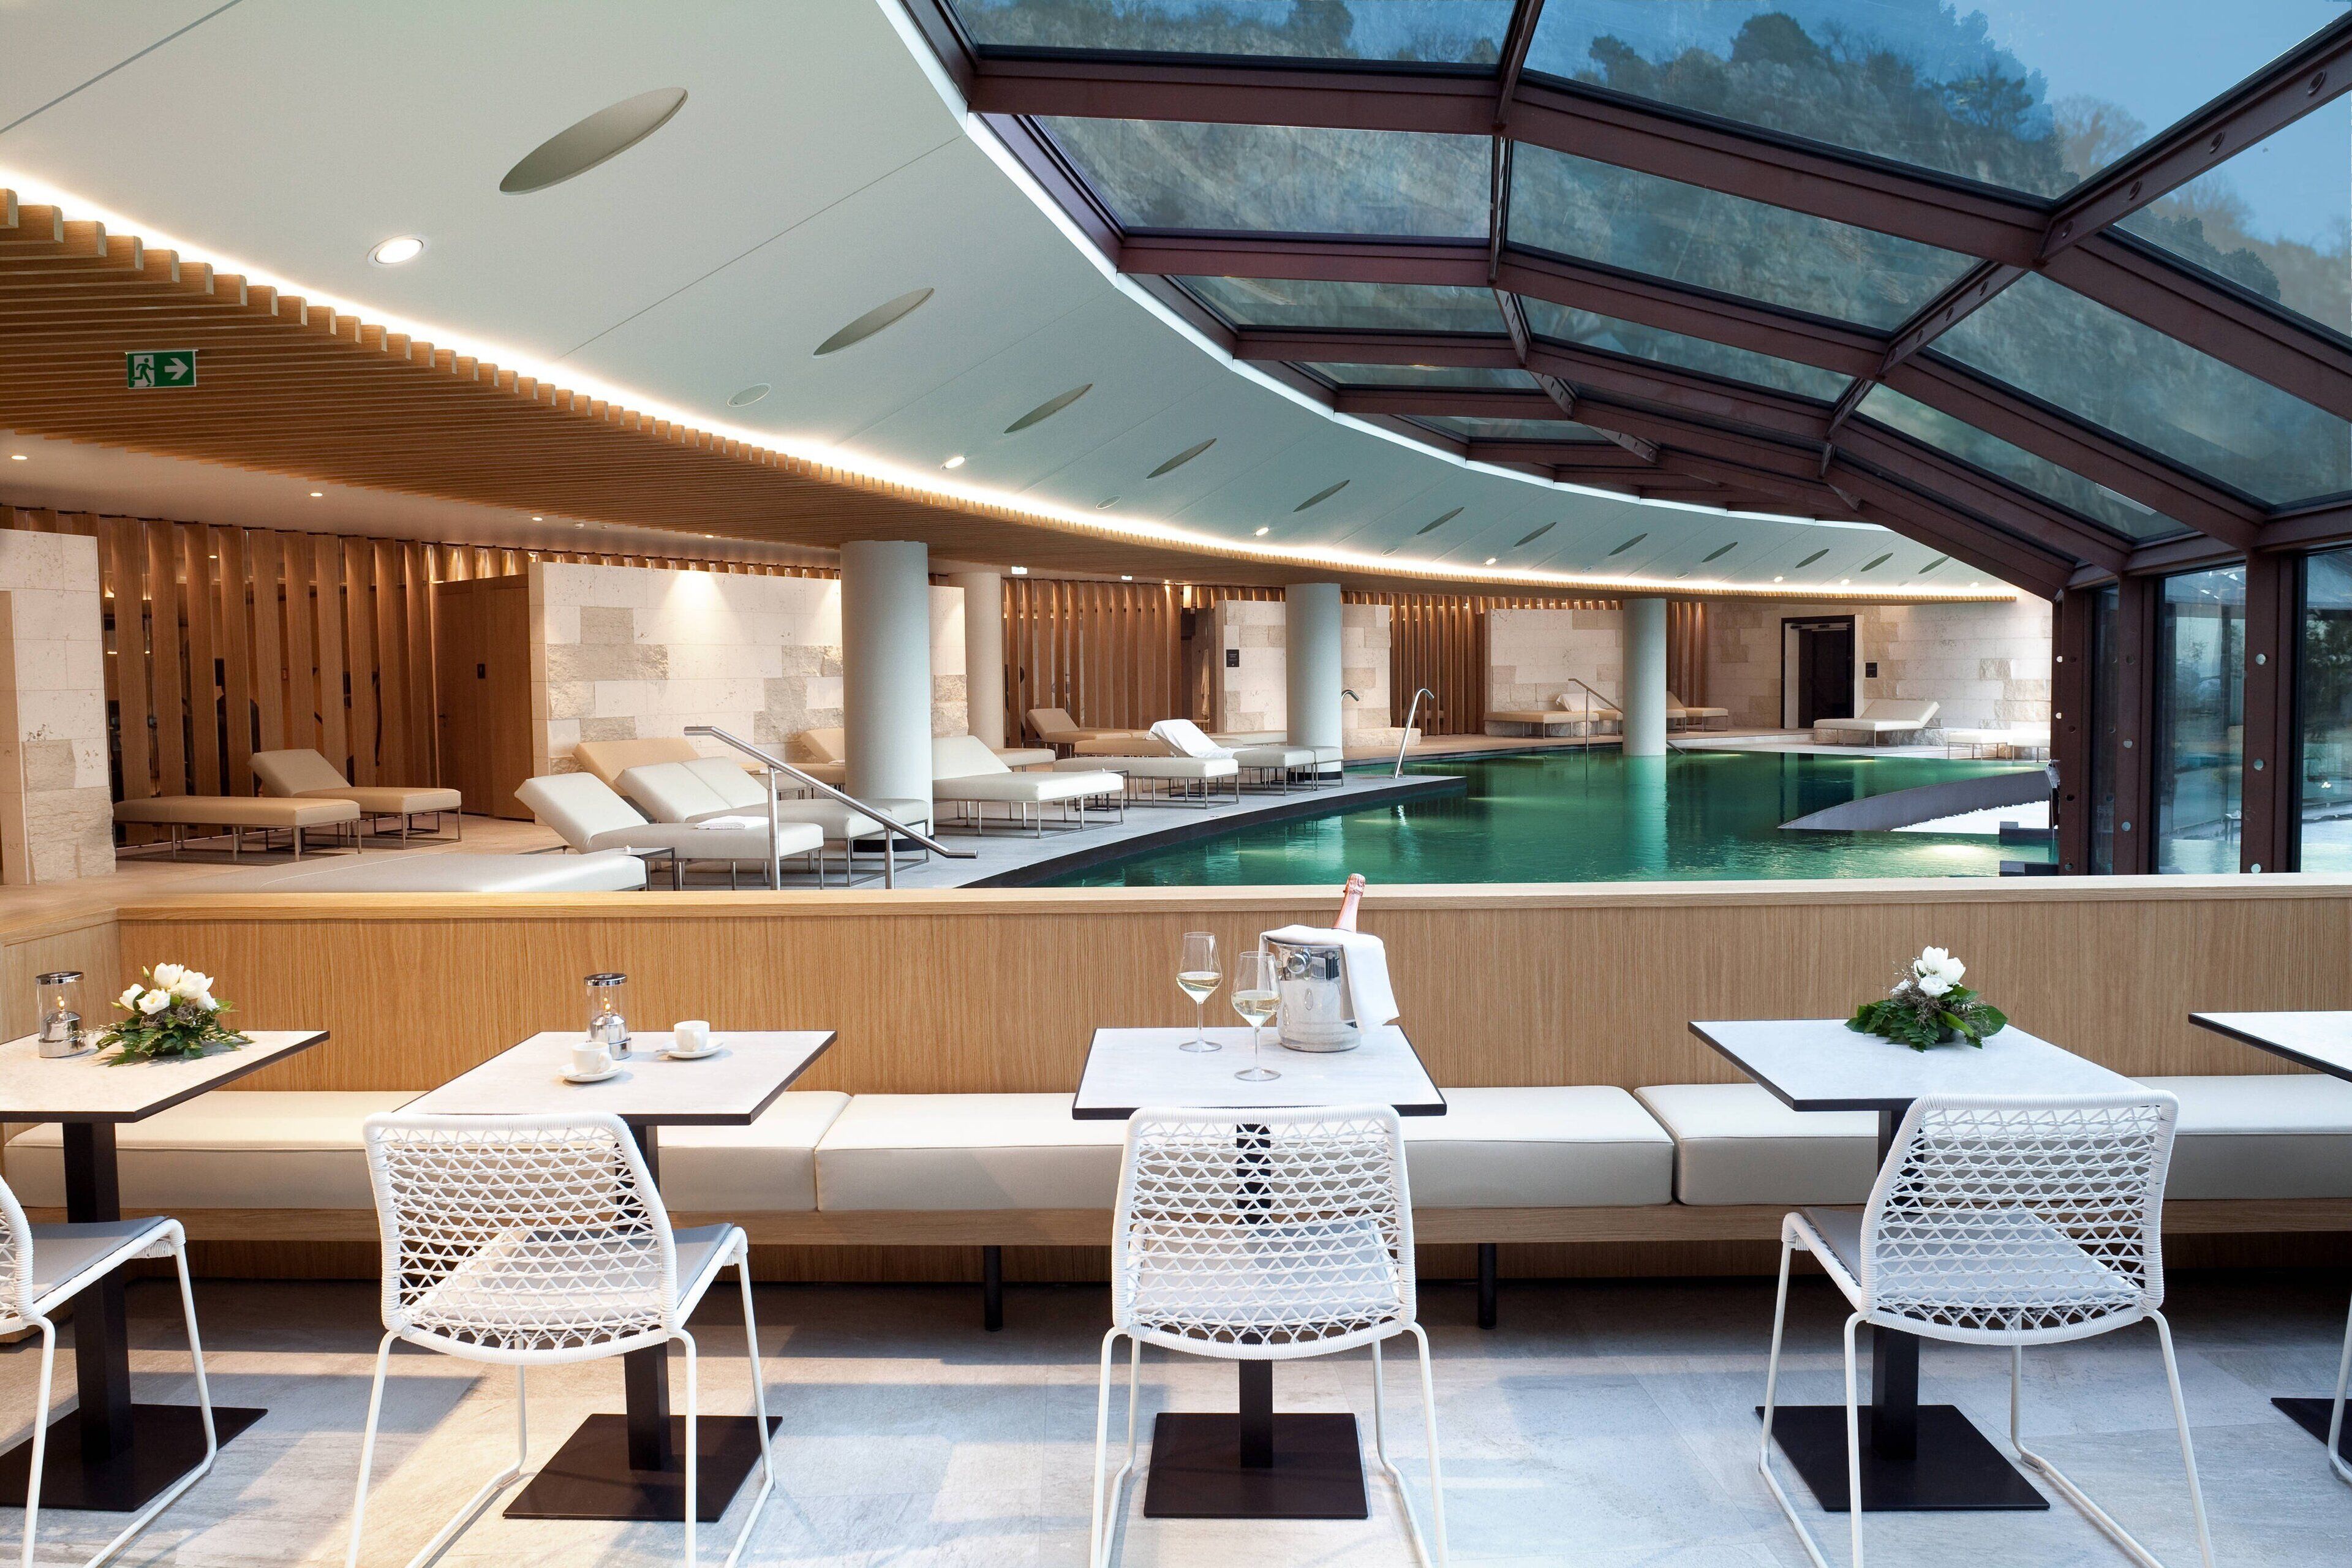 Falisia a Luxury Collection Resort & Spa, Portopiccolo